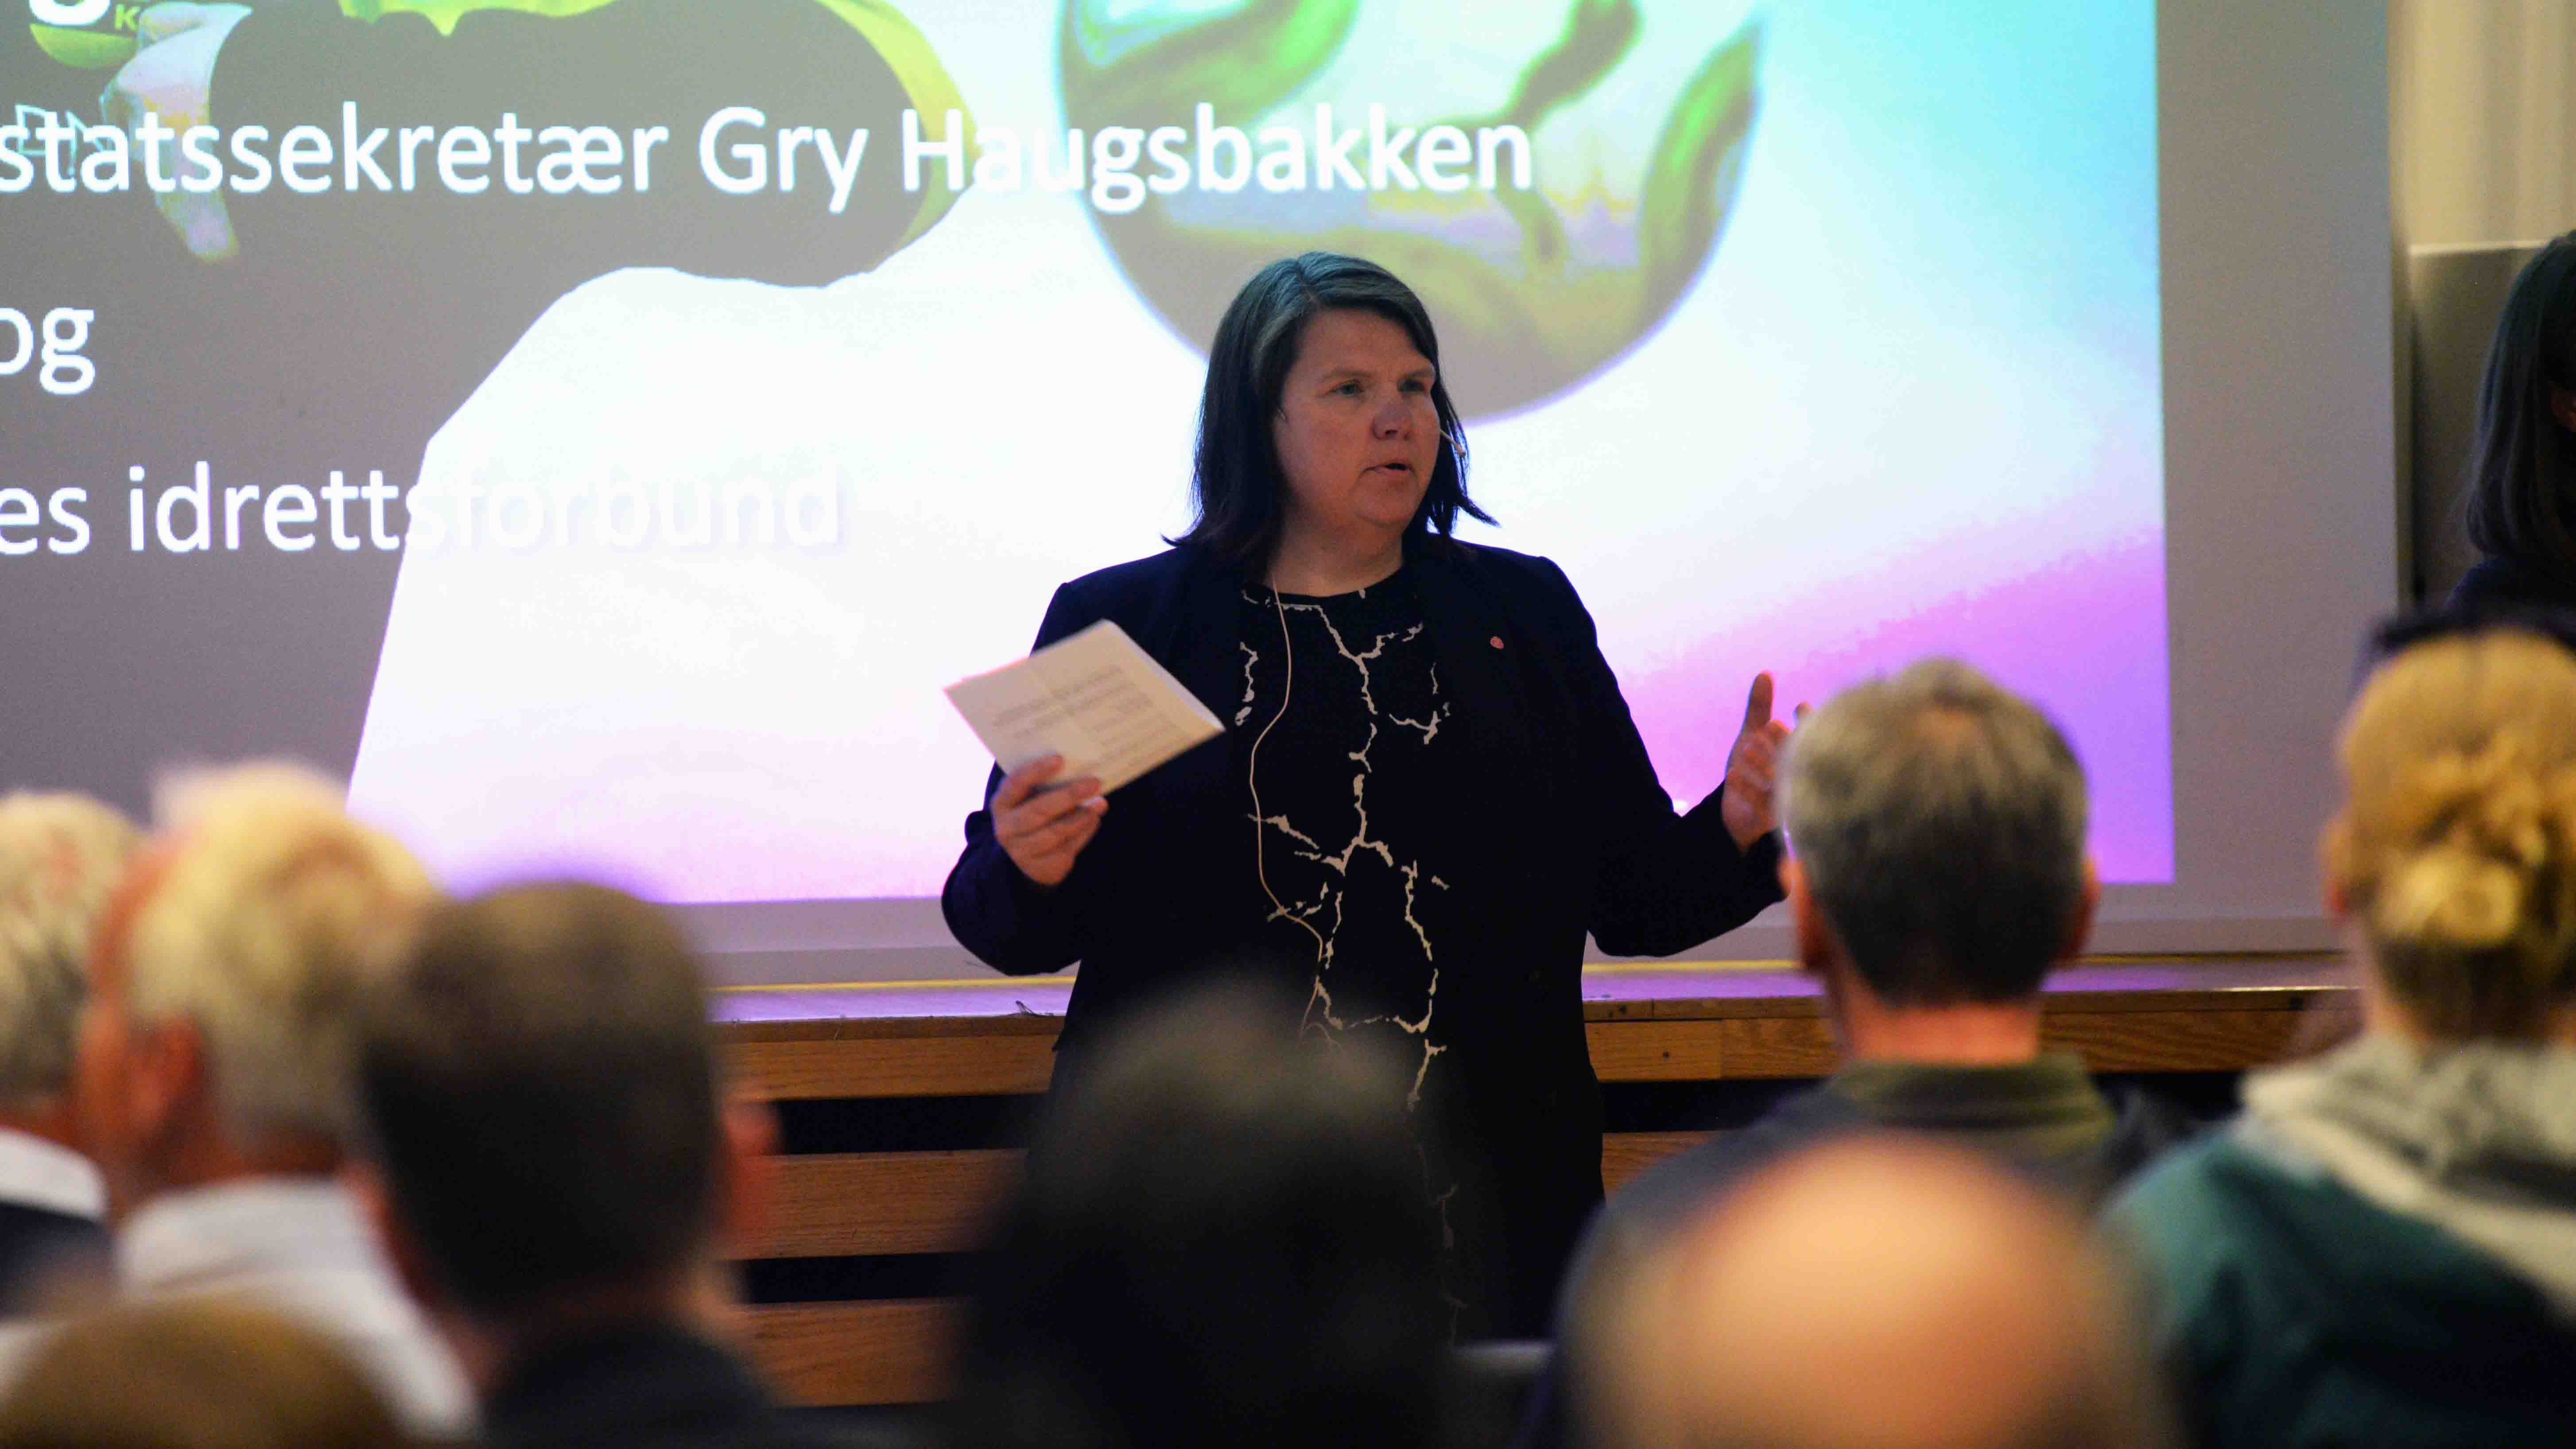 Gry Haugsbakken, statssekretær for kultur- og likestillingsminister Anette Trettebergstuen, var på plass i Tromsø fredag. Foto: Pernille Ingebrigtsen